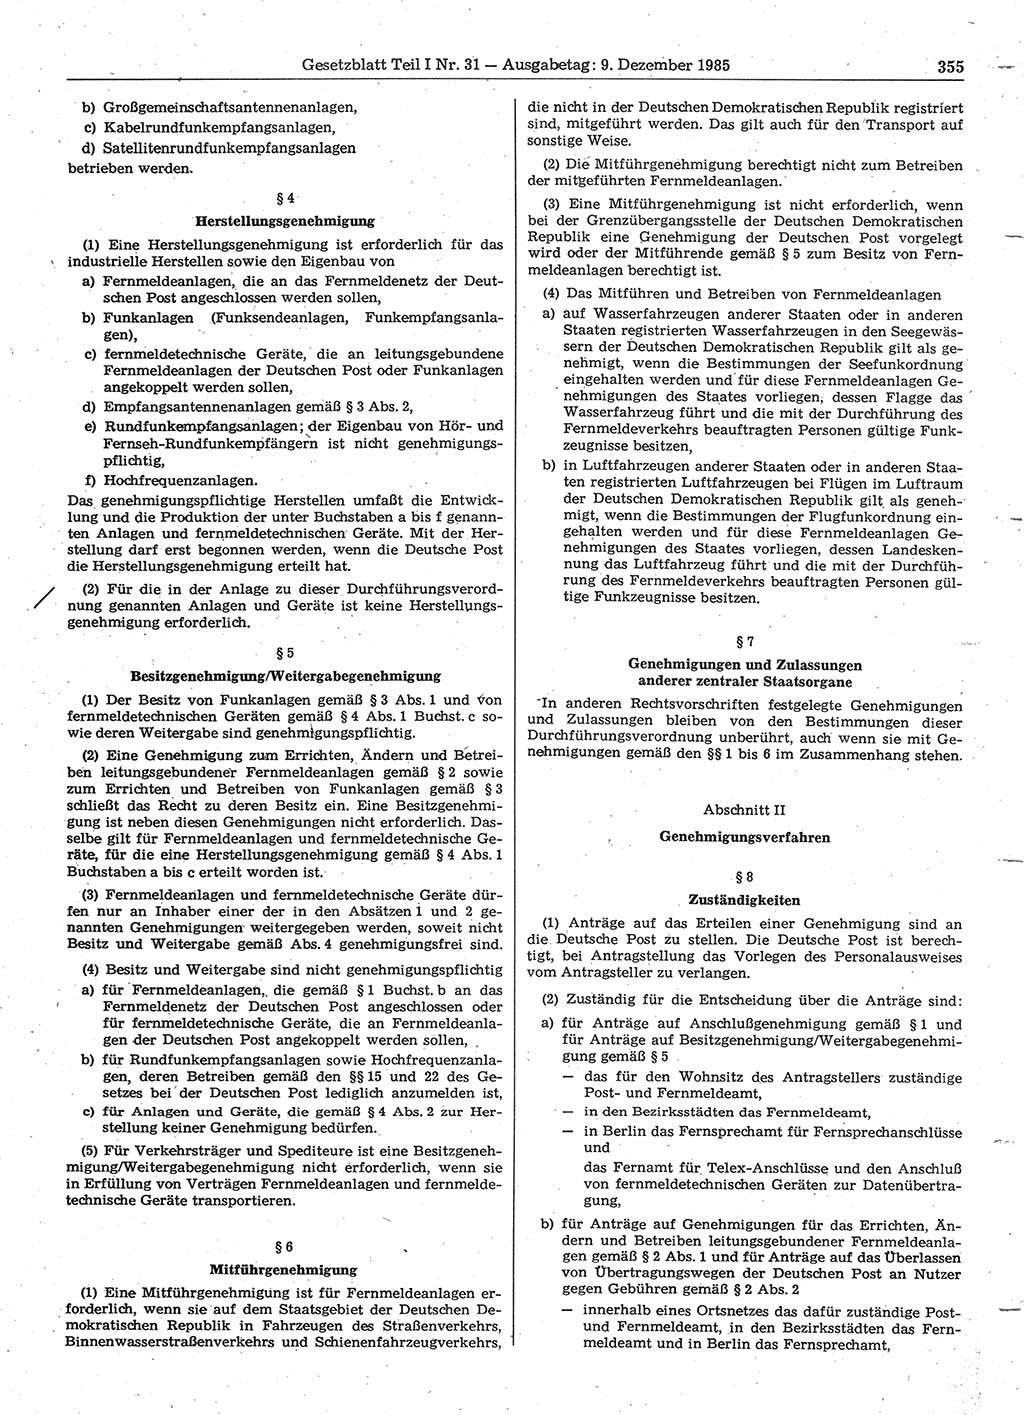 Gesetzblatt (GBl.) der Deutschen Demokratischen Republik (DDR) Teil Ⅰ 1985, Seite 355 (GBl. DDR Ⅰ 1985, S. 355)